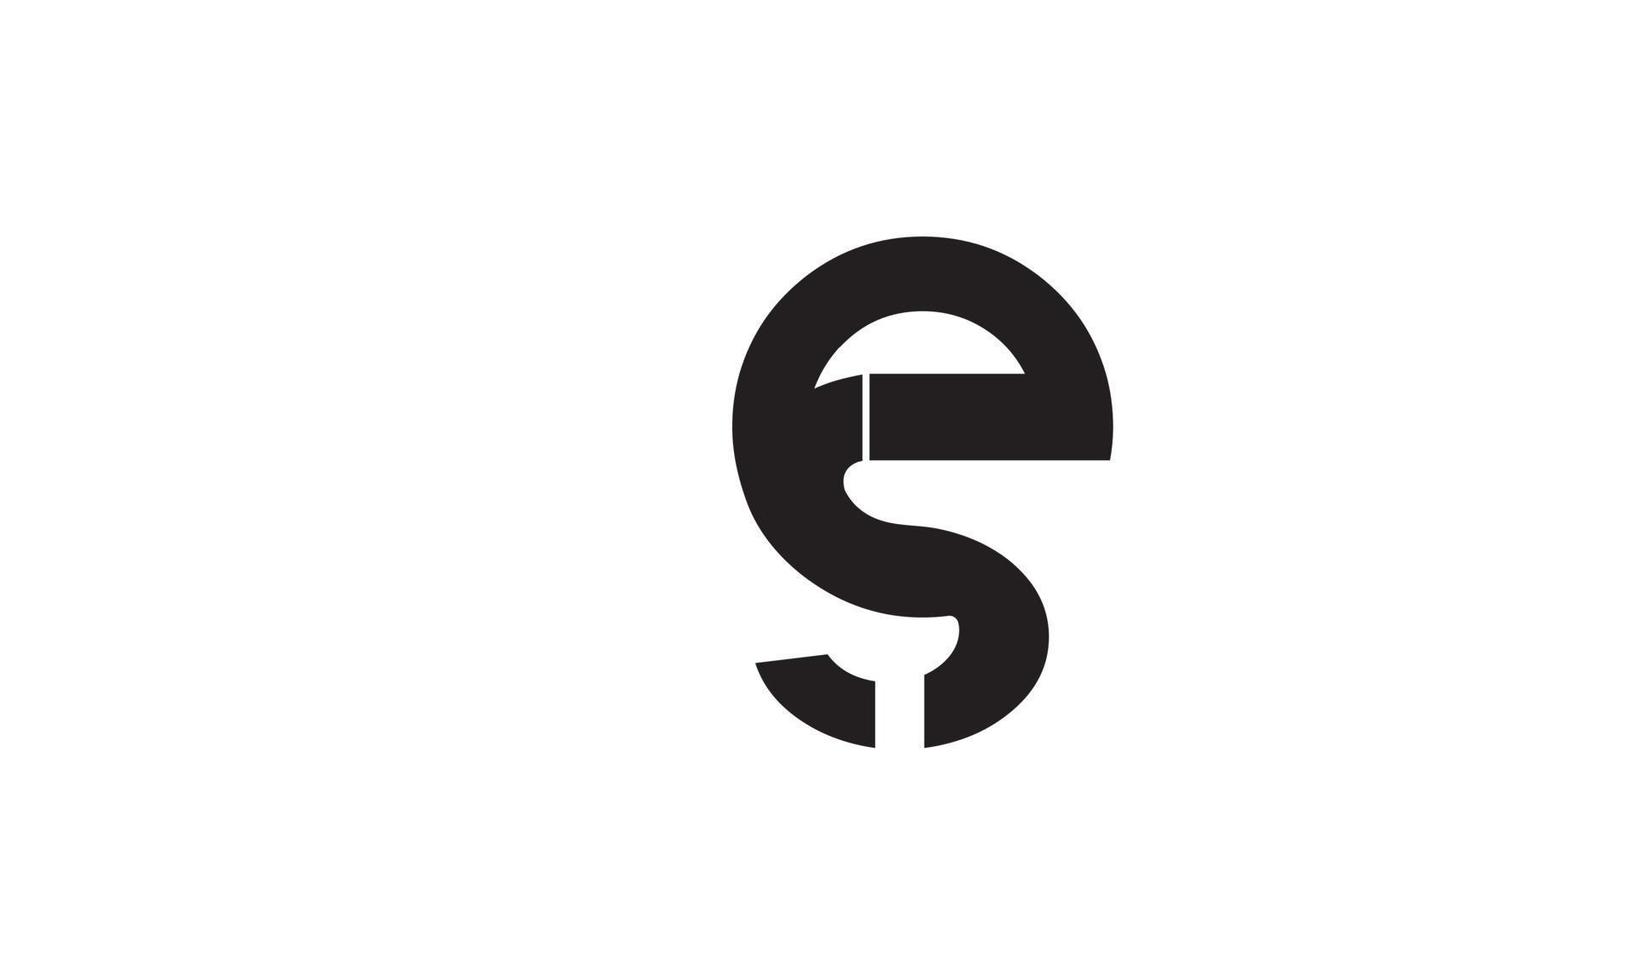 letras do alfabeto iniciais monograma logotipo se, es, s e e vetor